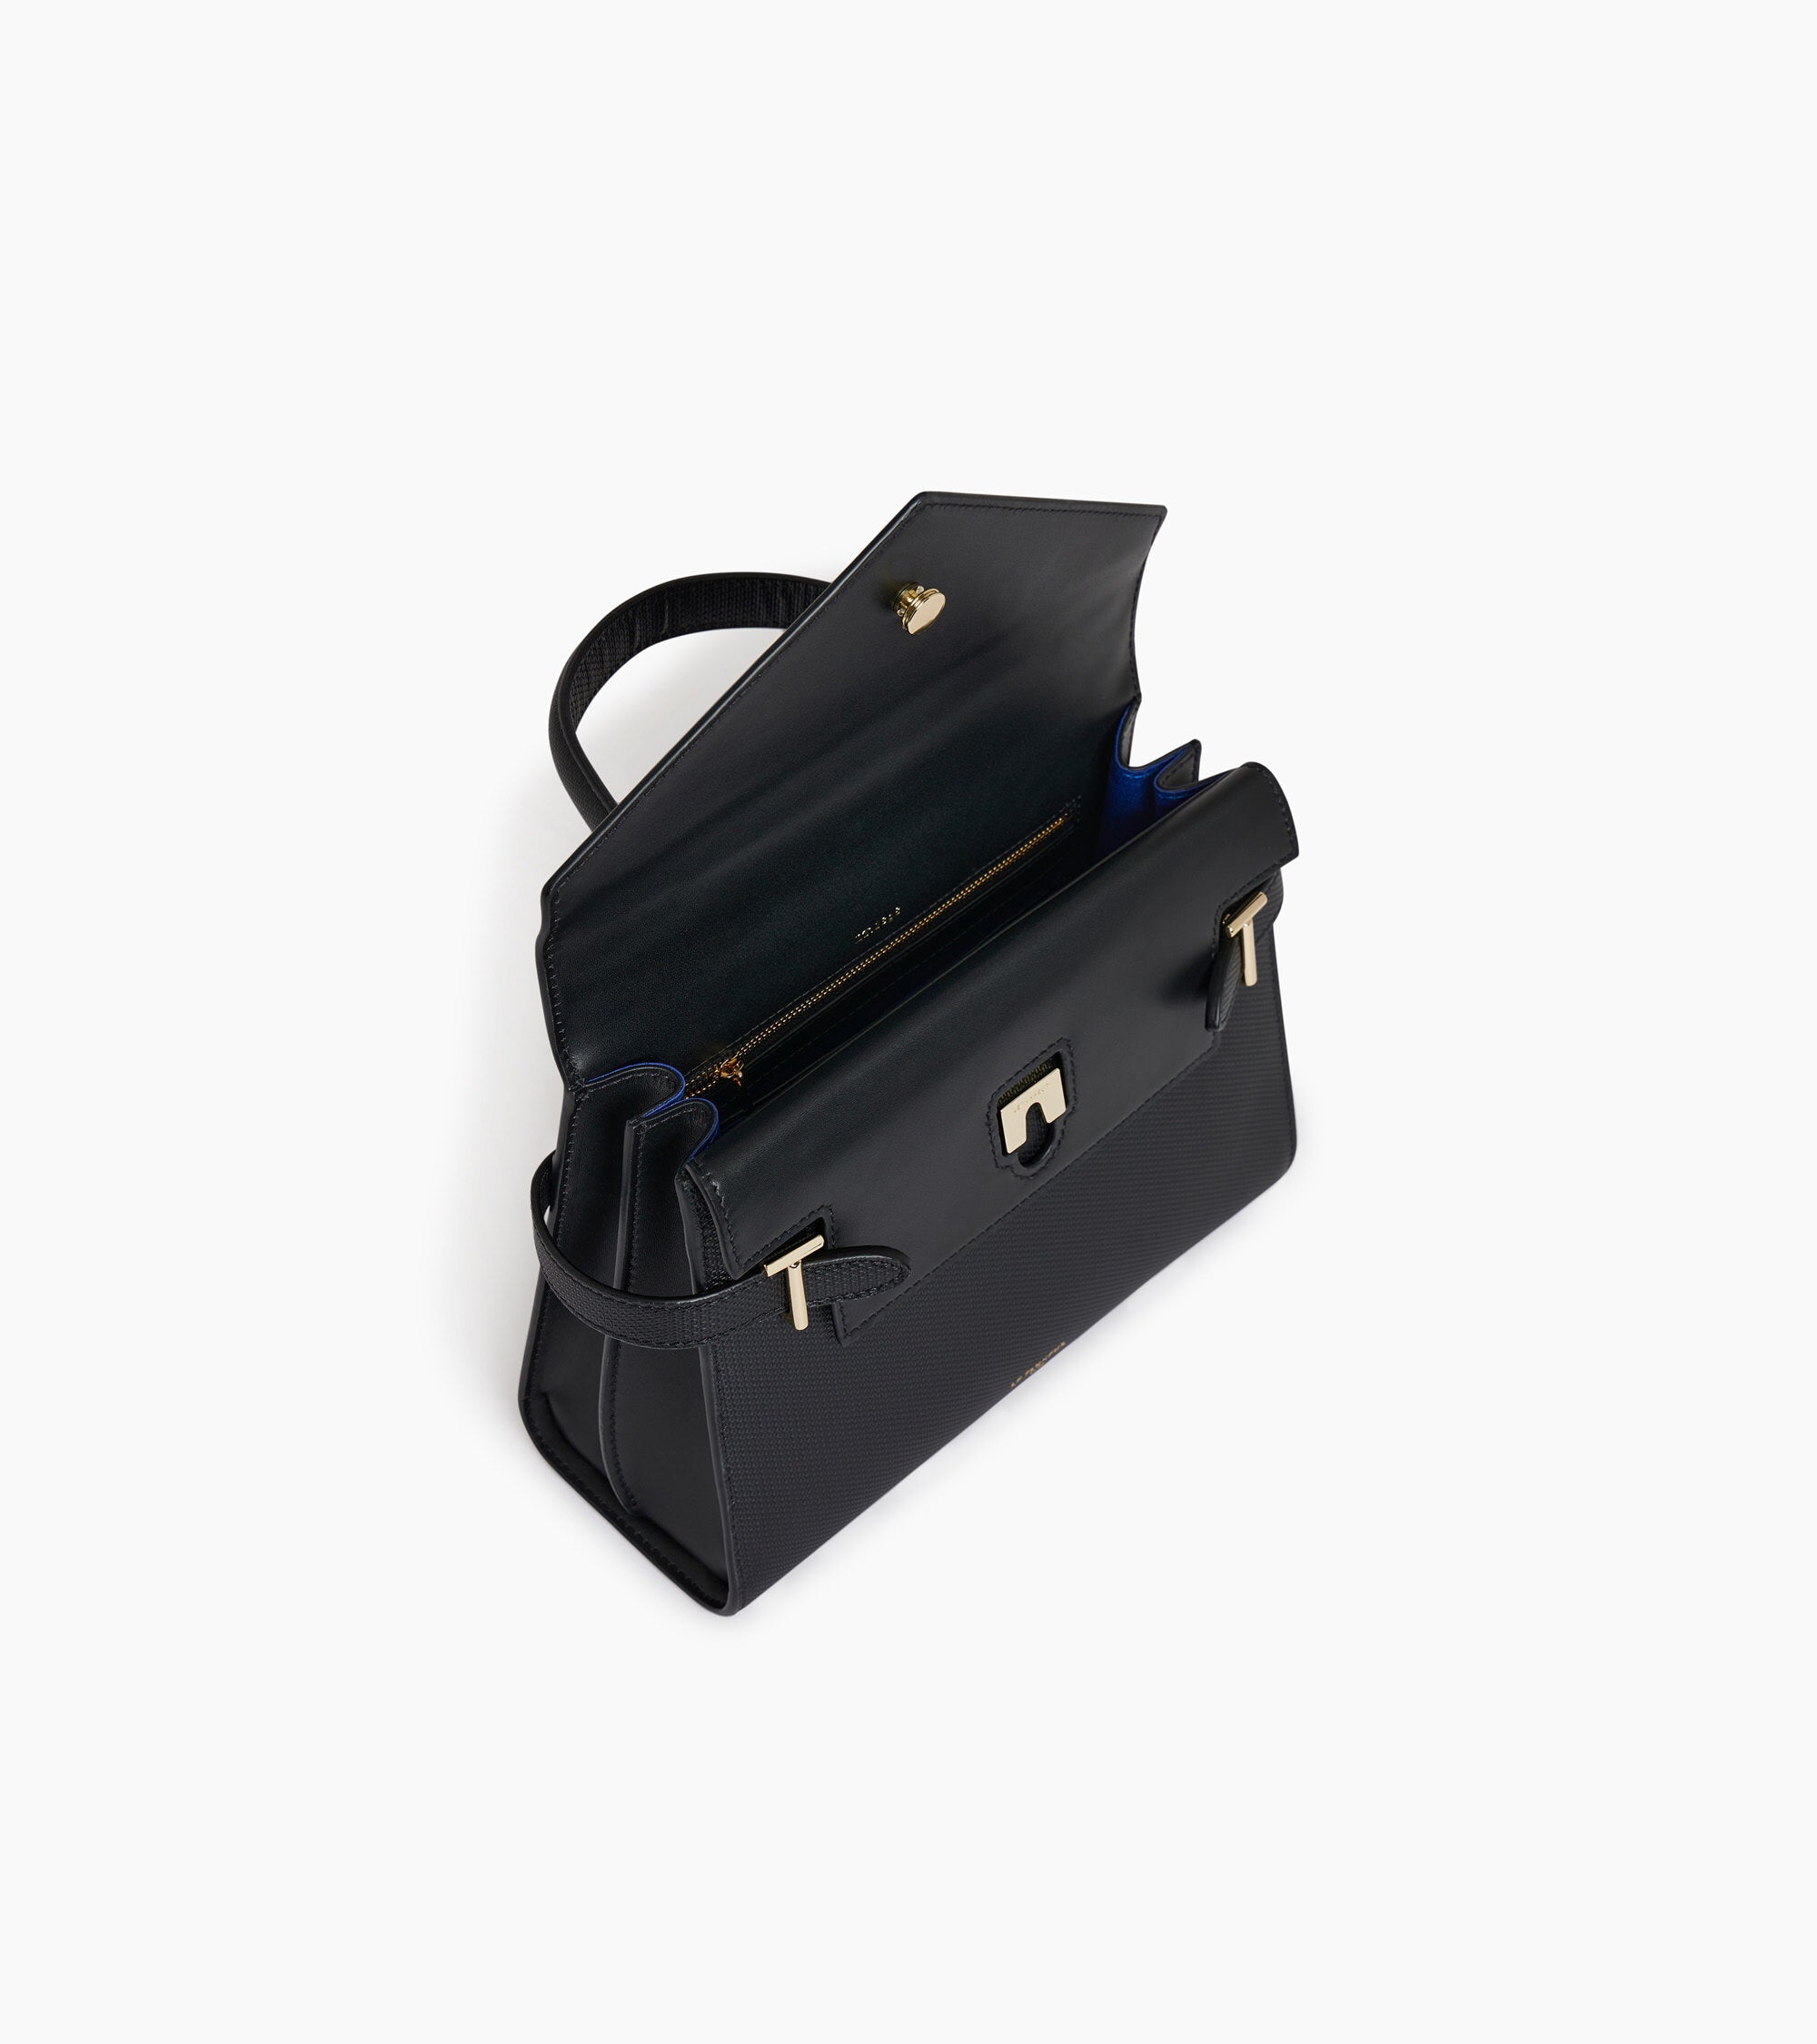 Emilie medium double flap handbag model in T signature leather